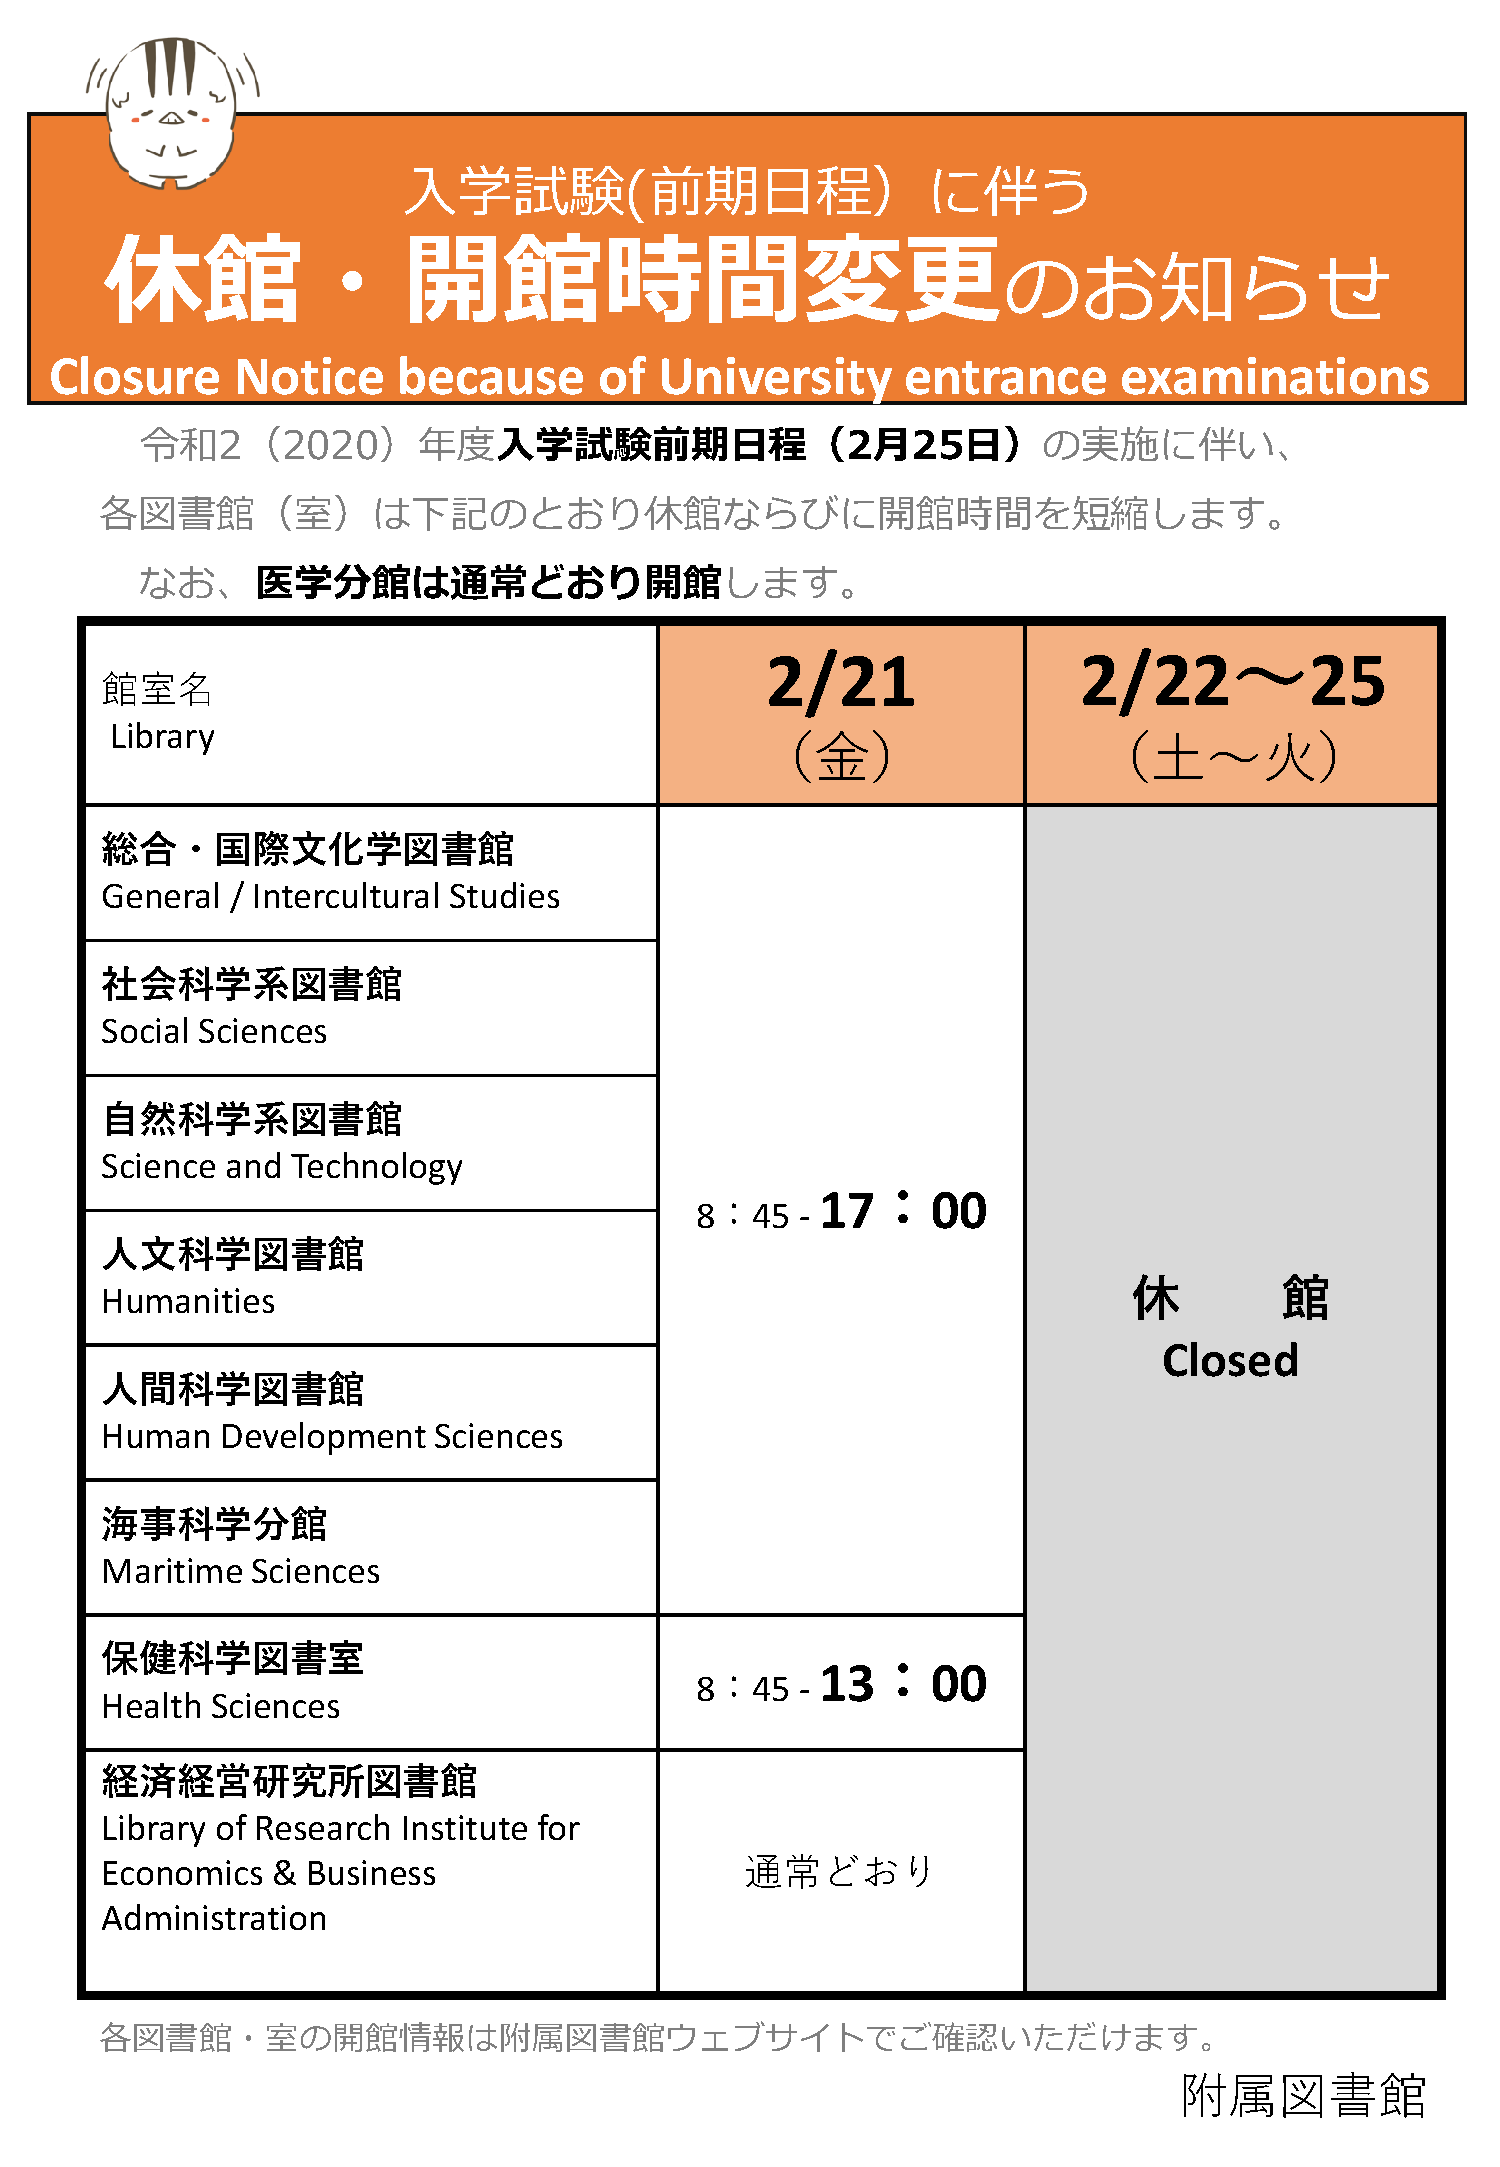 入学試験実施に伴う開館時間変更・休館のお知らせ(2月)